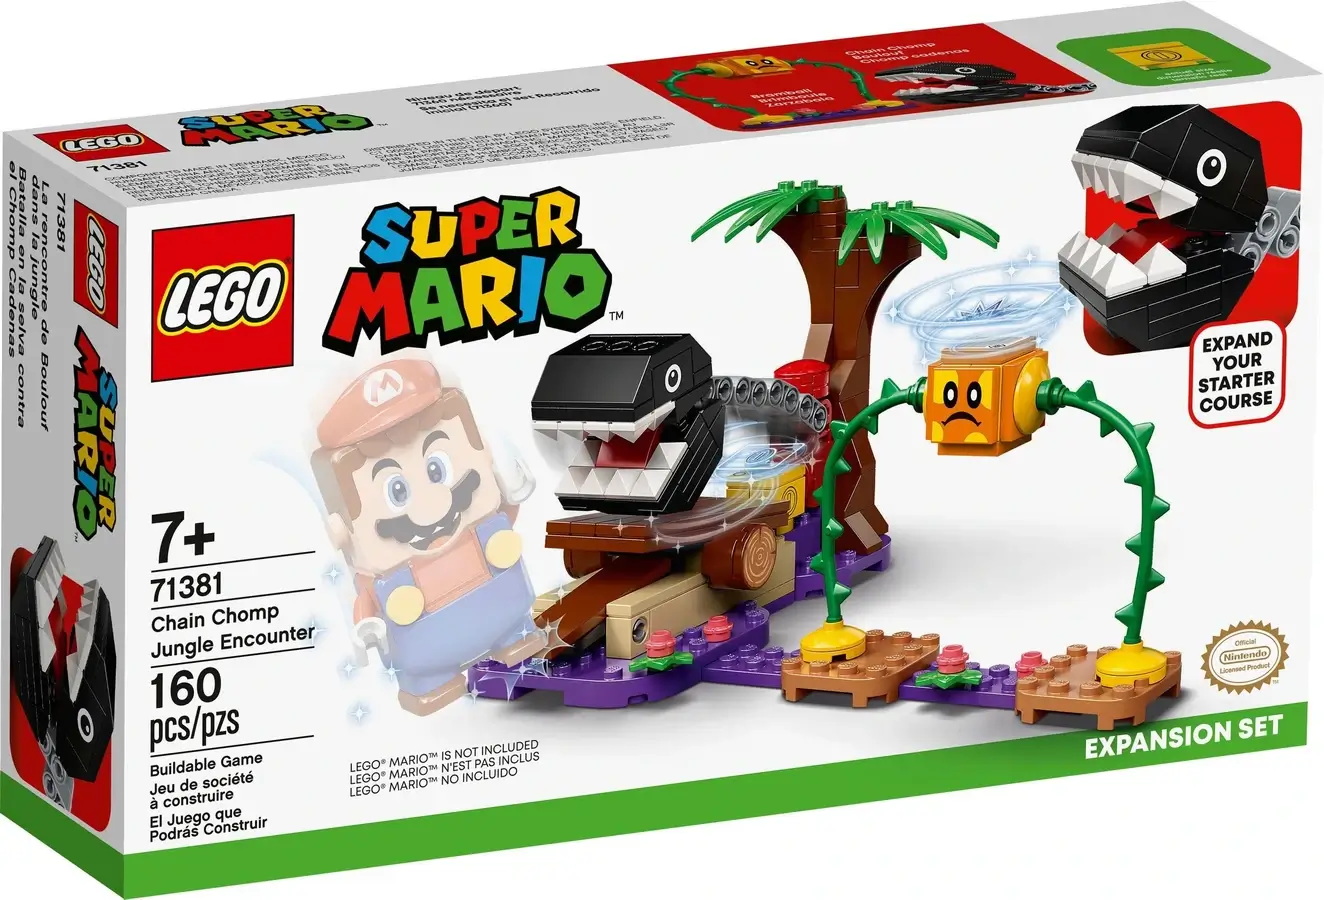 Pudełko zestawu 71381 z serii LEGO® Super Mario™ – spotkanie z Chain Chompem